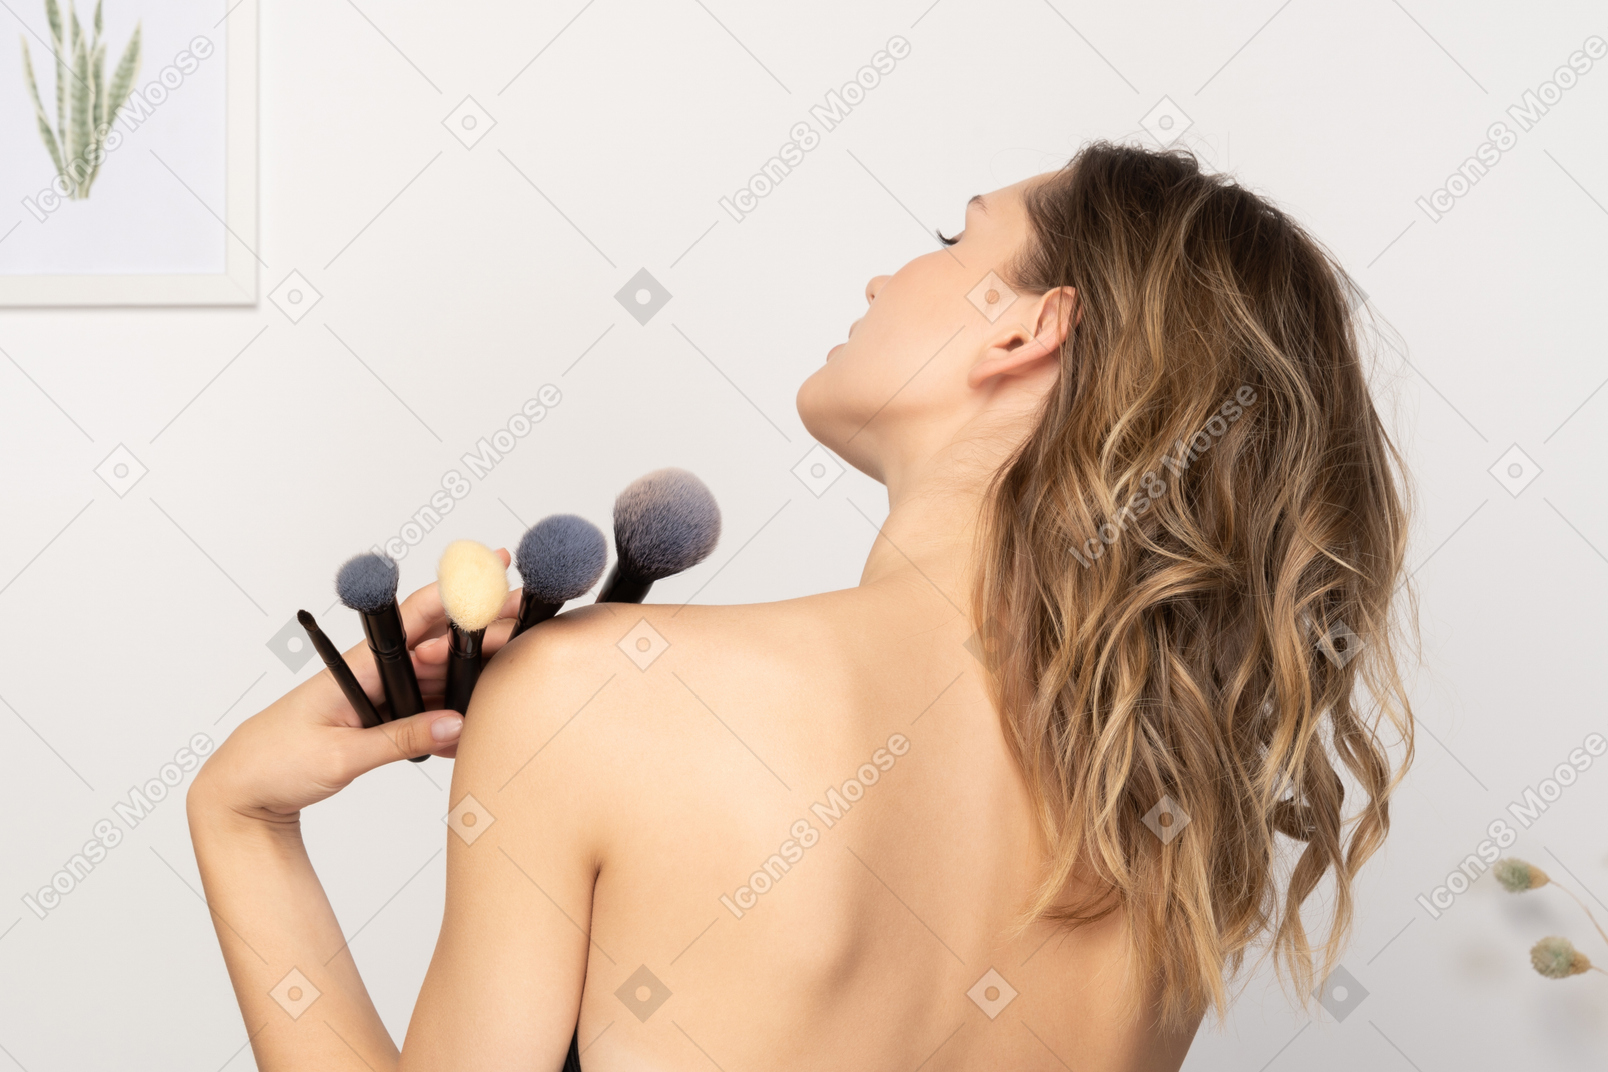 Вид сзади чувственной молодой женщины, держащей кисти для макияжа